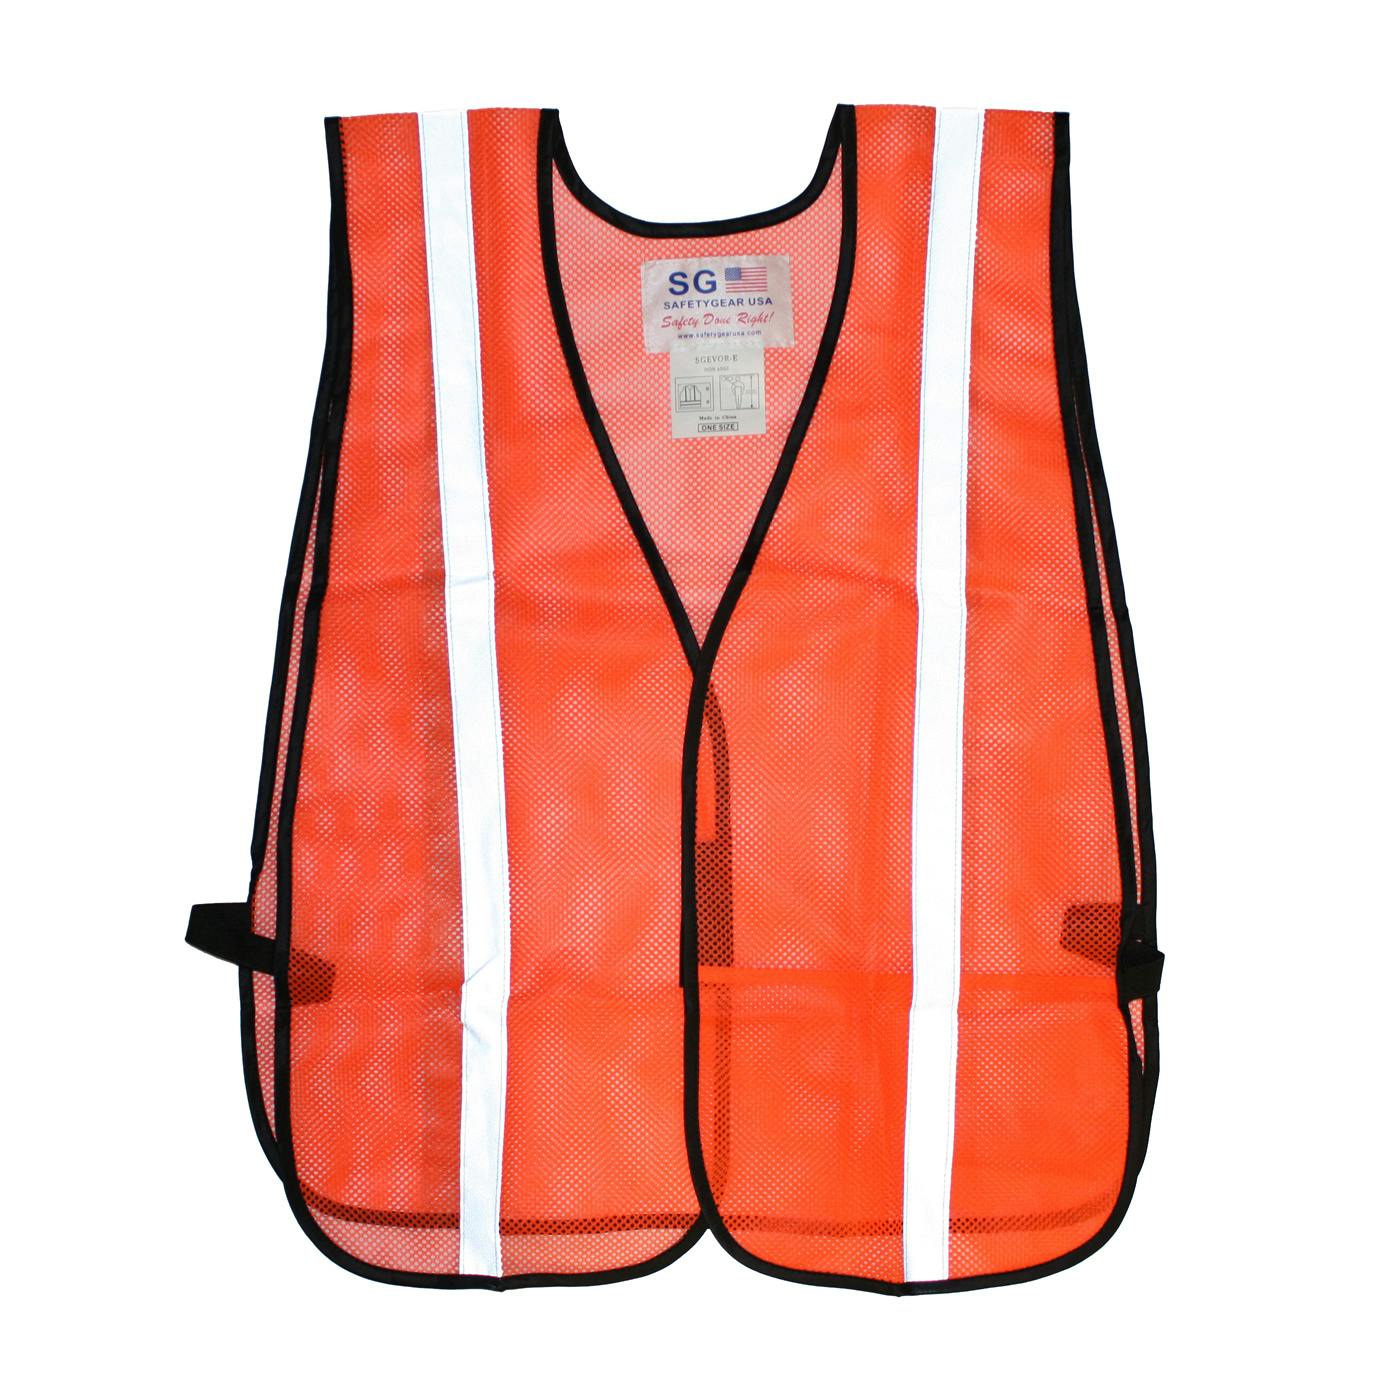 Non-ANSI One Pocket Mesh Safety Vest, Hi-Vis Orange (300-EVOR-E)